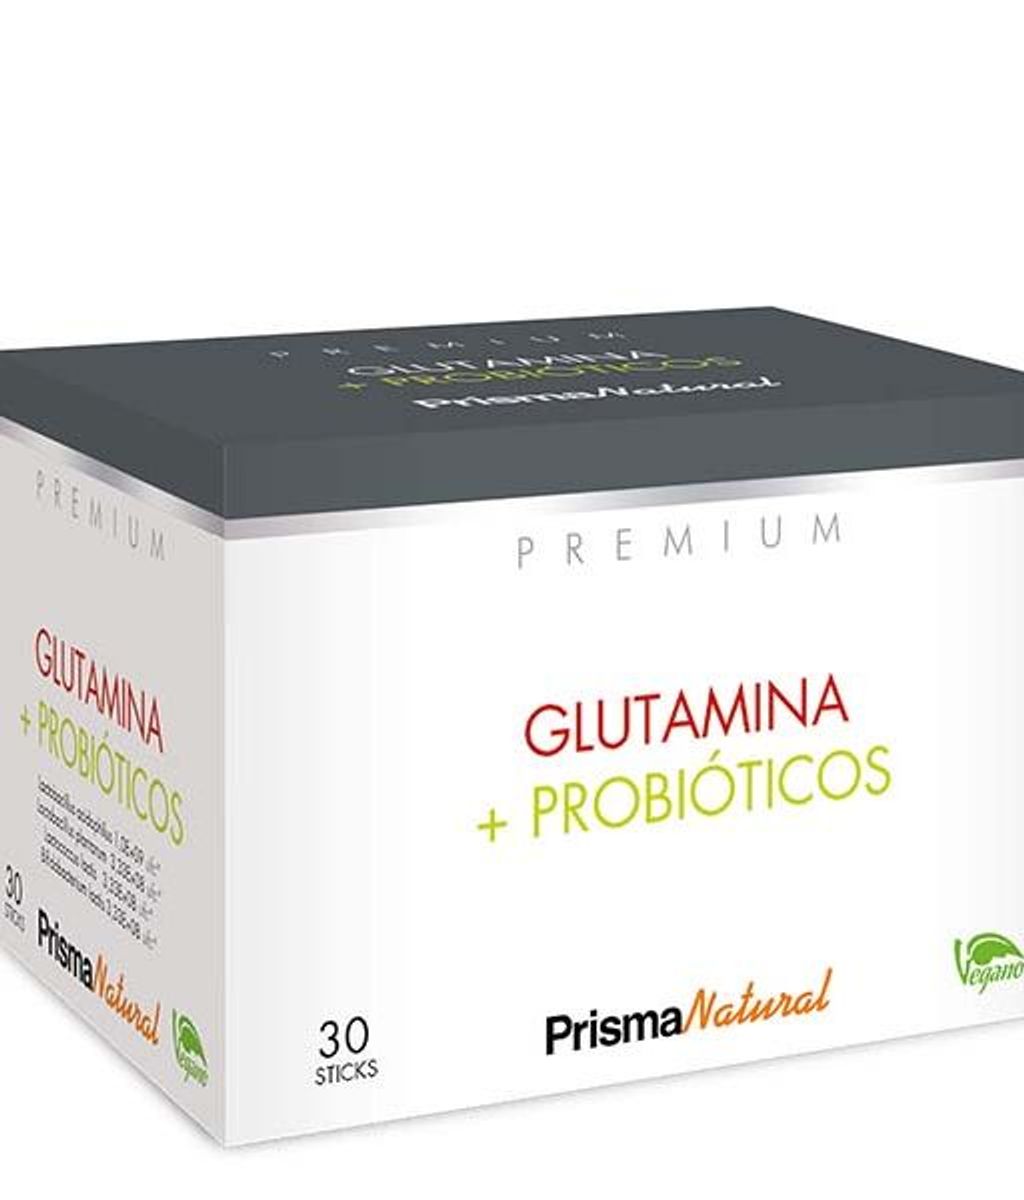 Los probióticos con glutamina